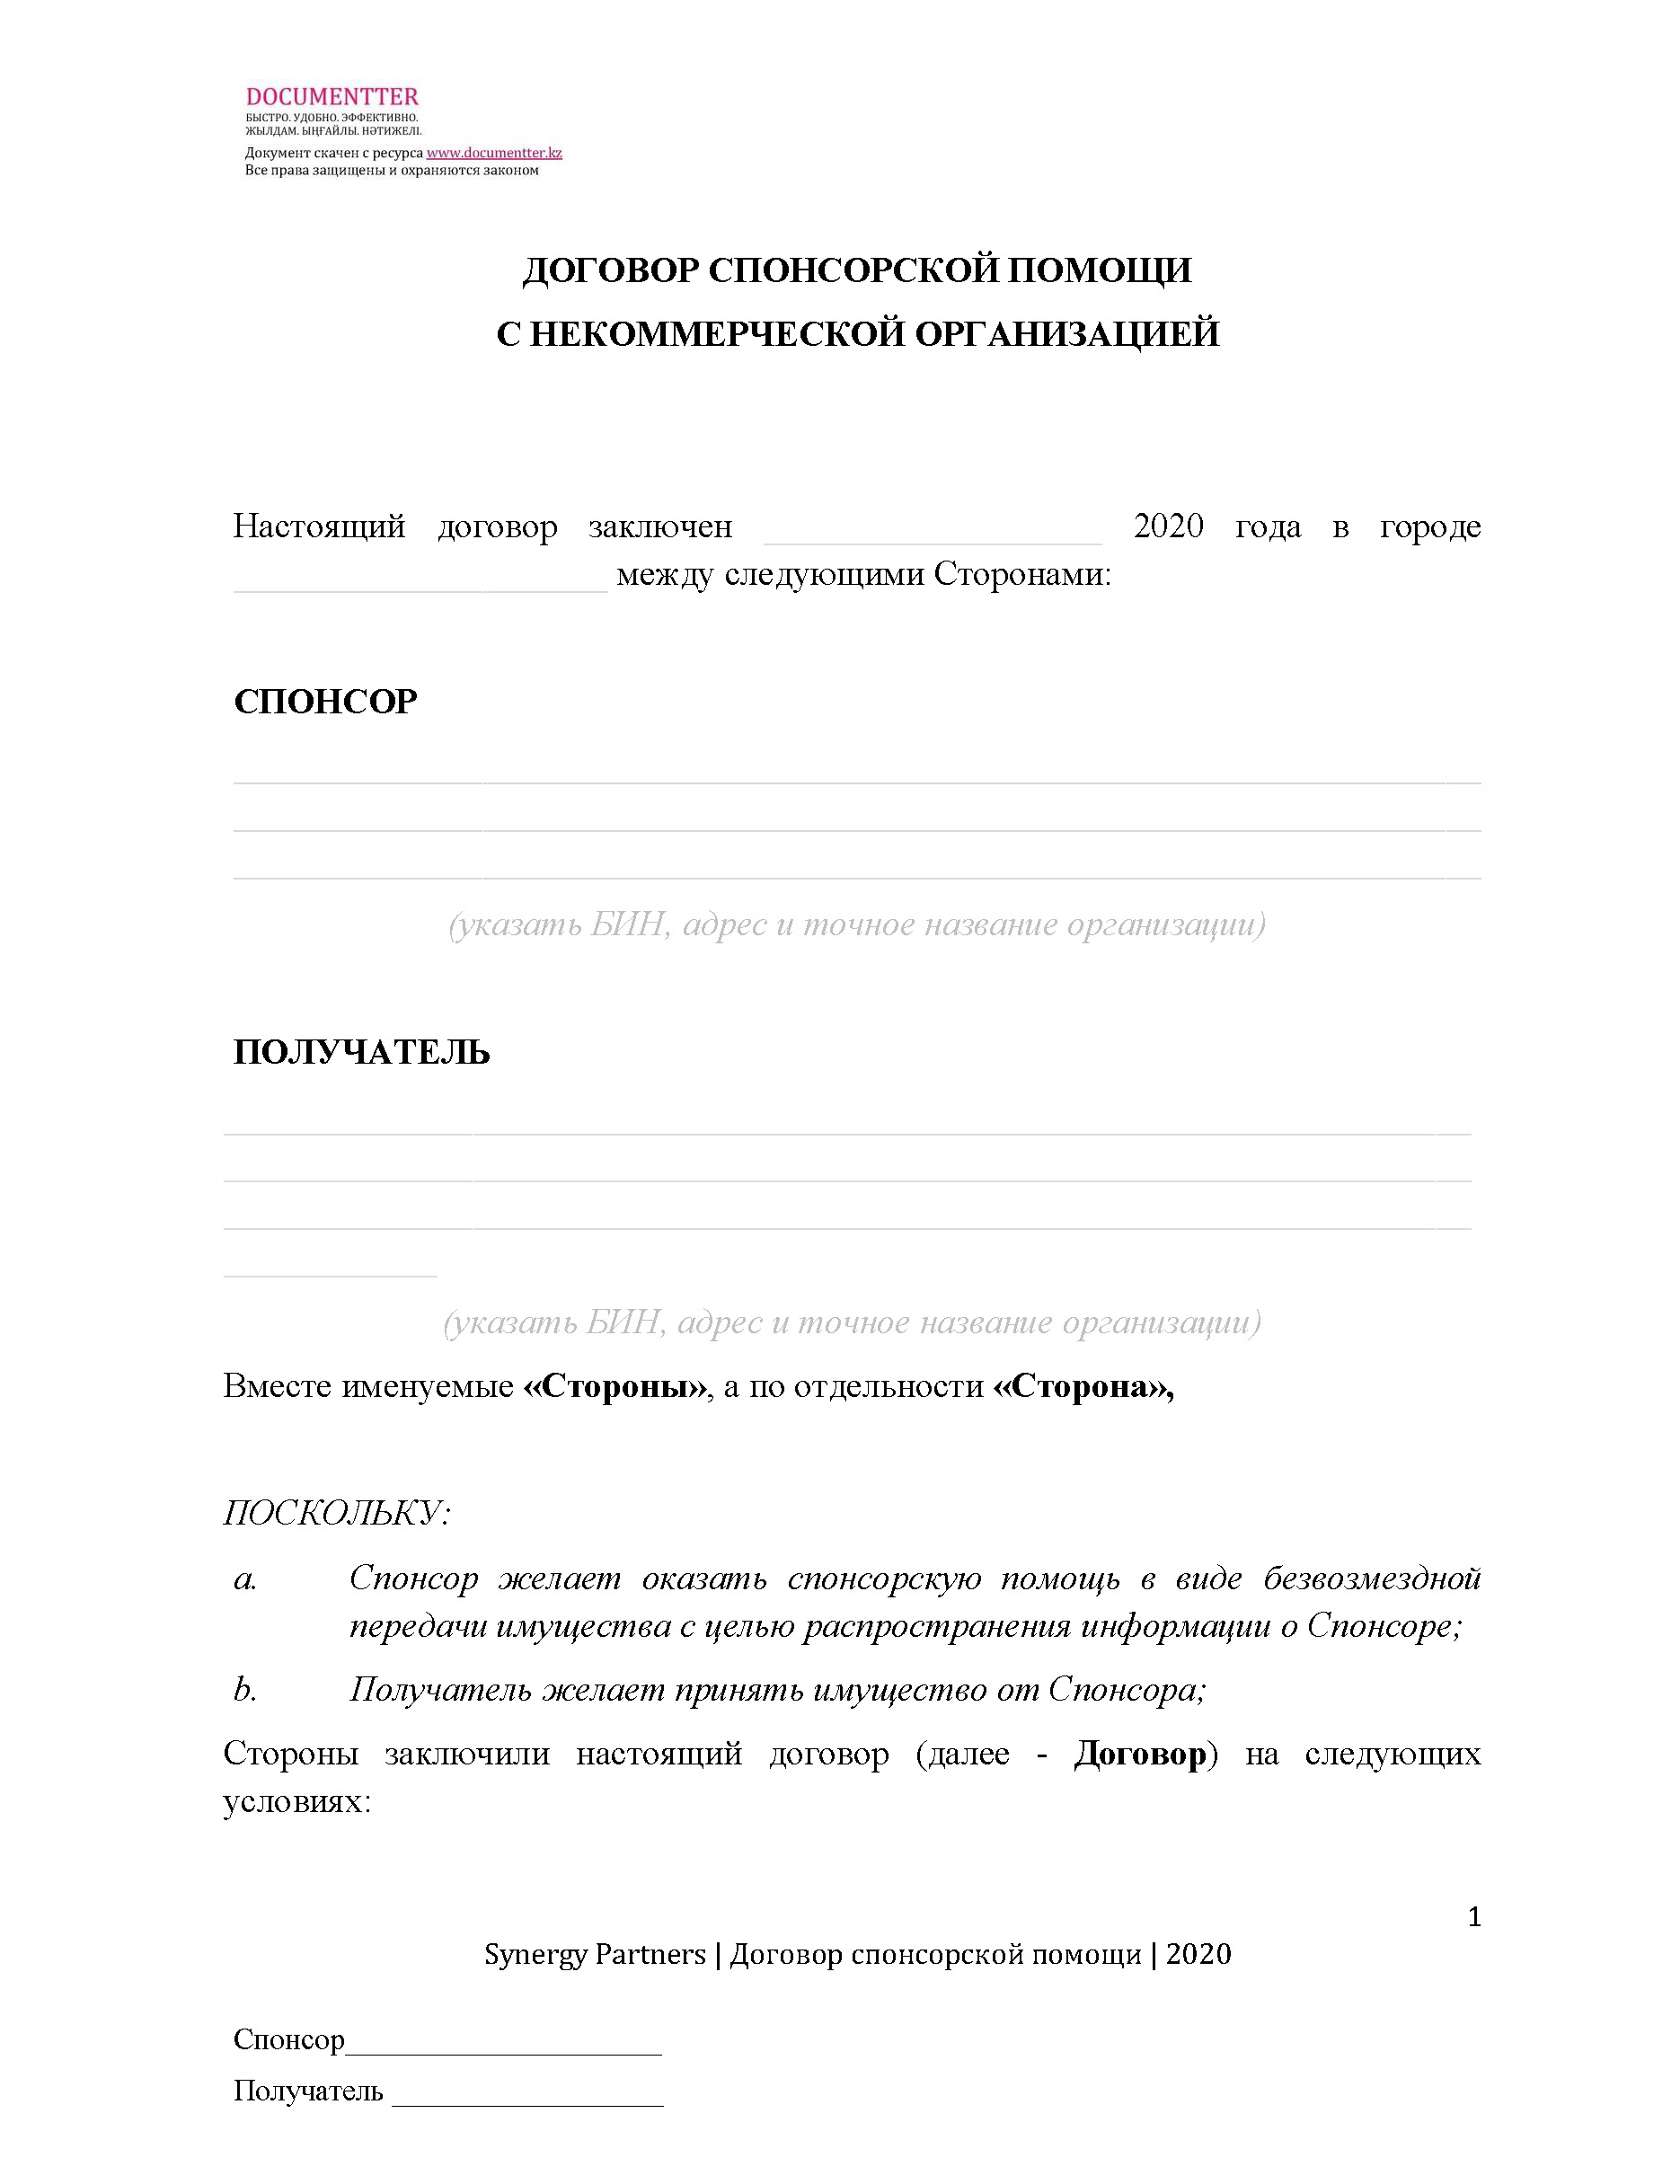 Договор спонсорской помощи, когда ТОО дает спонсорскую помощь некоммерческой организации  | documentter.kz в Казахстане 